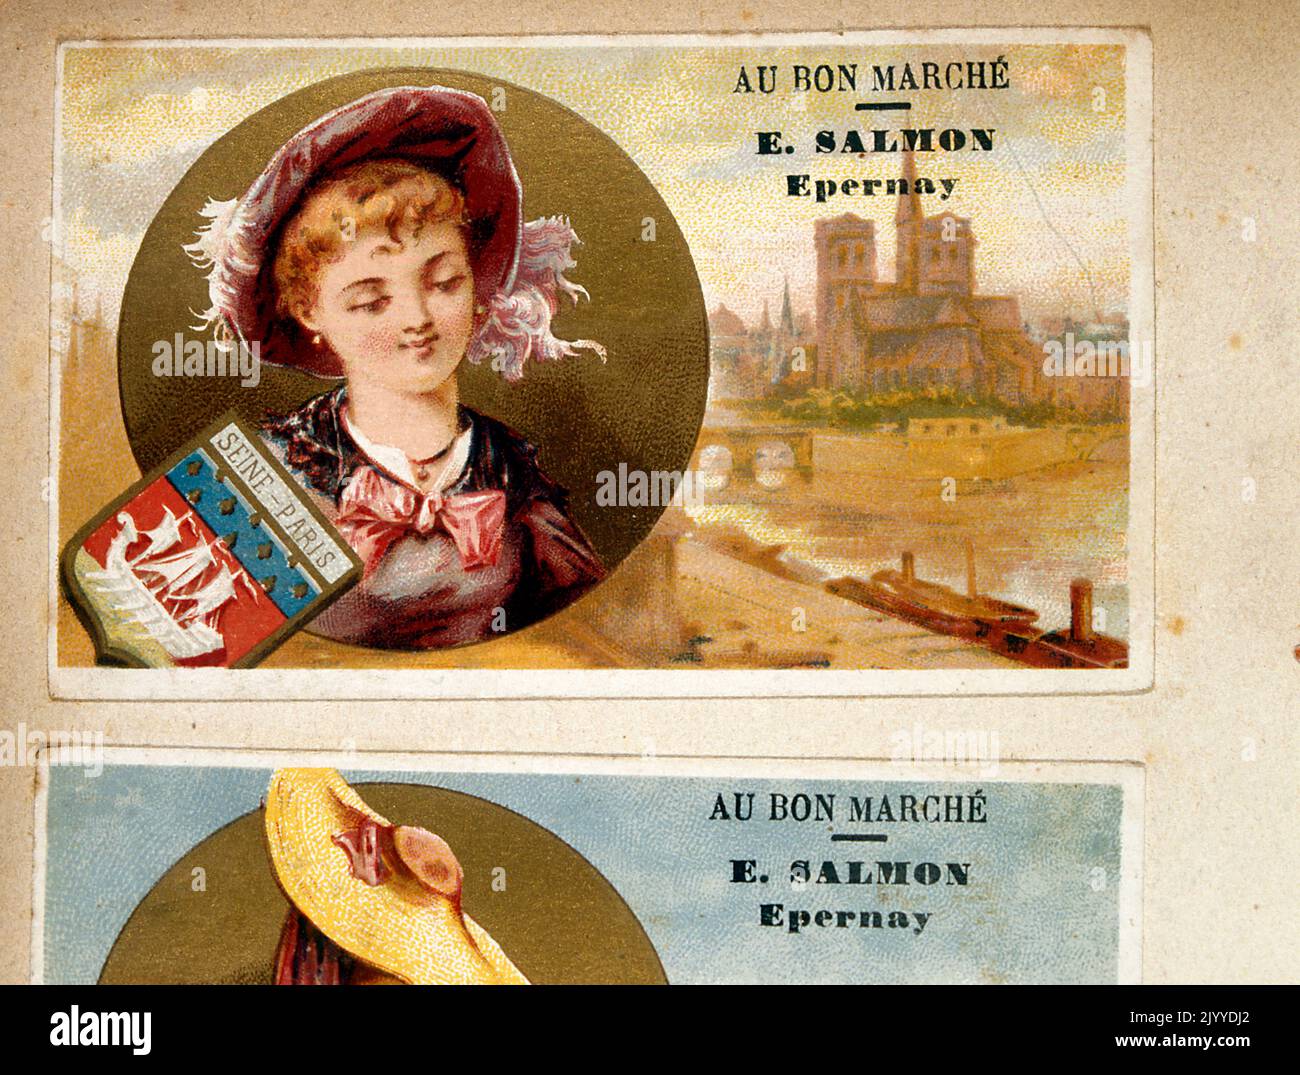 Tauschkarte aus der Kollektion „Au Bon Marche“, gedruckt von E. Salmon Epernay, mit Darstellung der seine, Paris, Frankreich Stockfoto